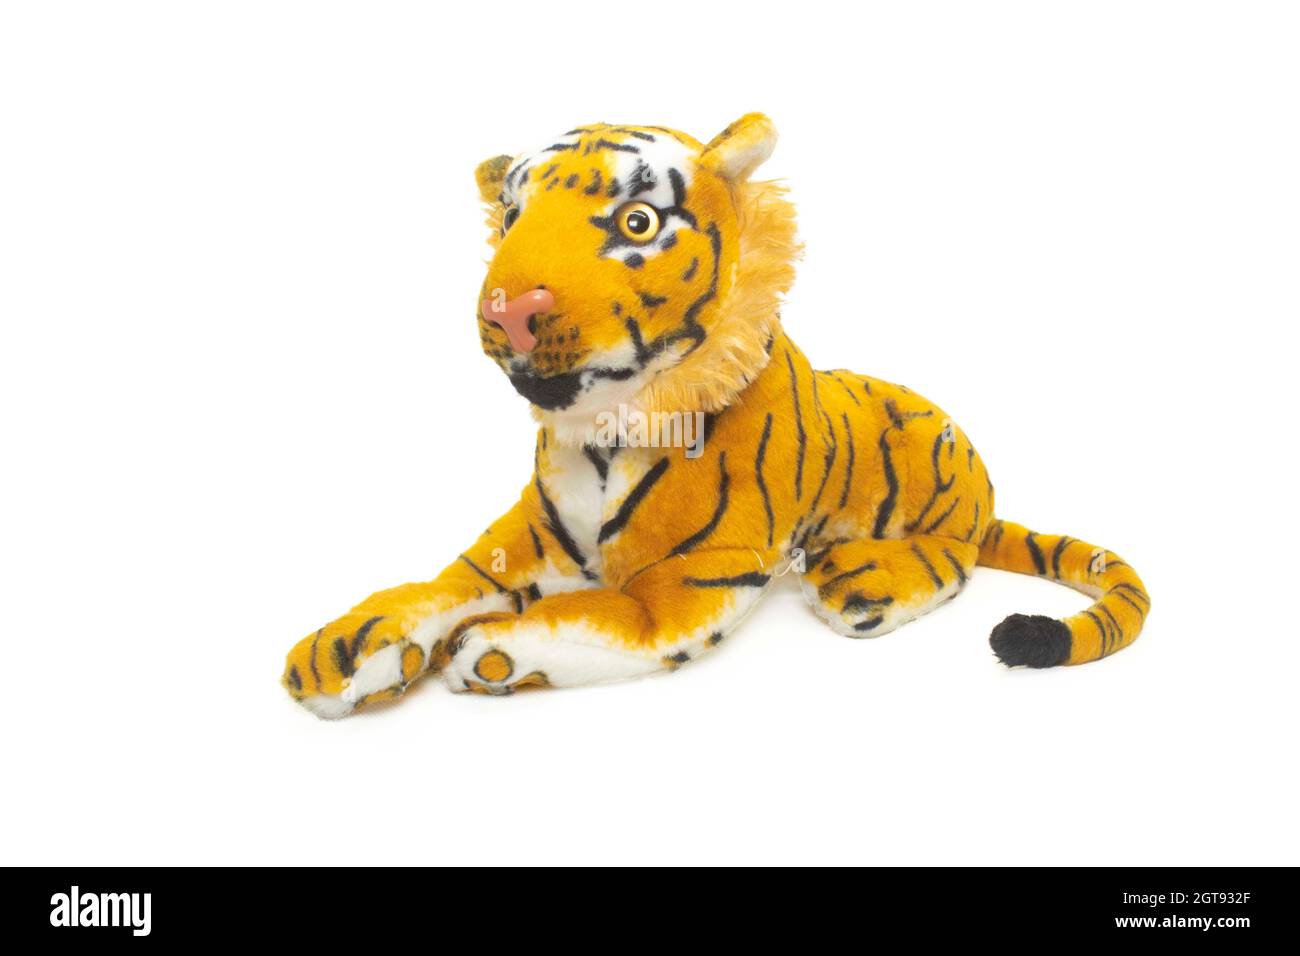 Bambola Tiger isolata su sfondo bianco. Bambola della tigre bengala isolata. Foto Stock